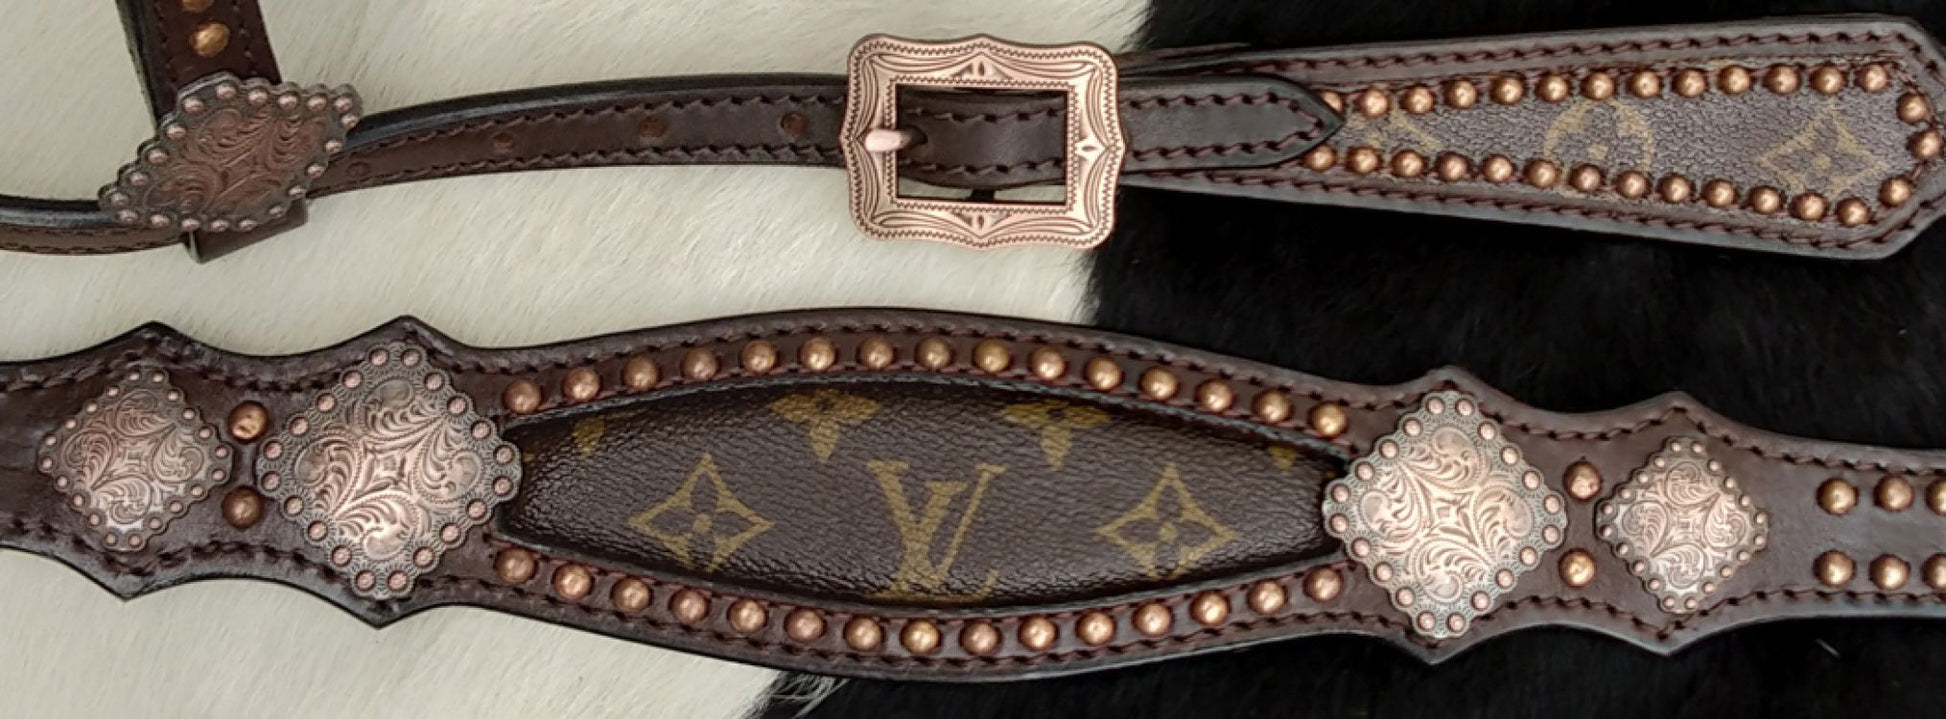 LV Tack sets black or dark brown leather